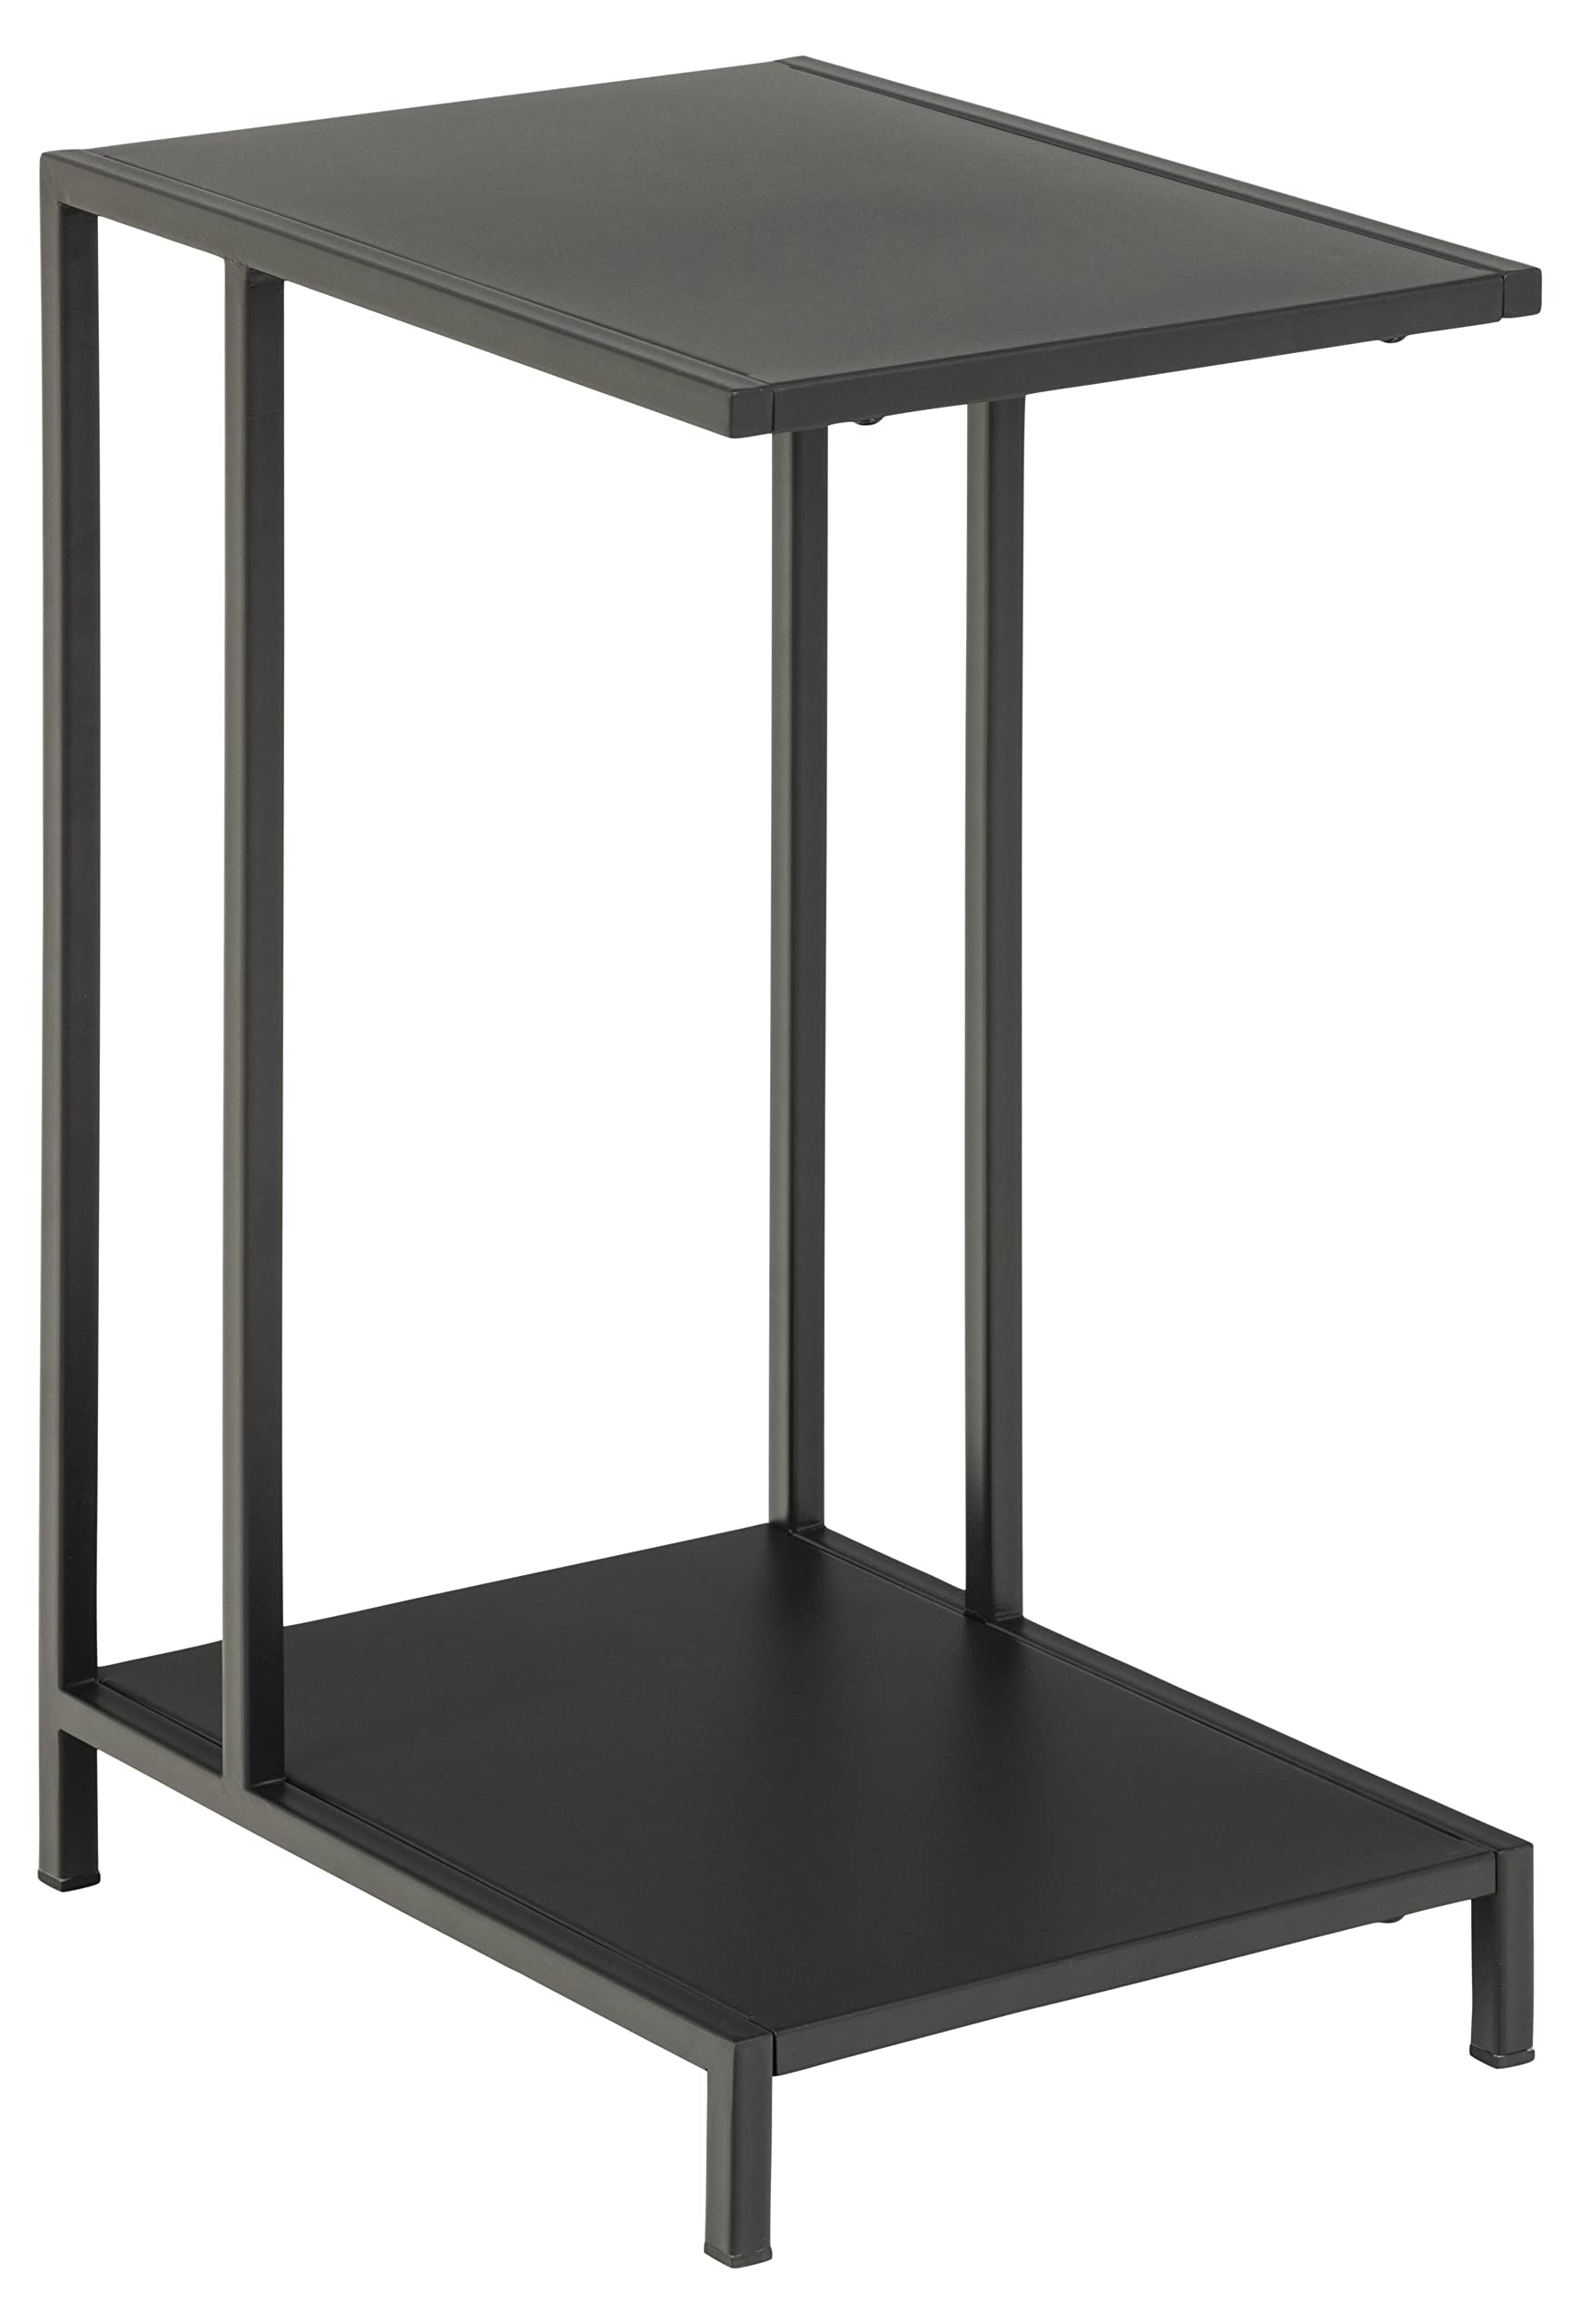 AC Design Furniture Norbert Laptop-Tisch, Schwarzer Beistelltisch, Home Office Möbel, Einfache Montage, H: 60 x B: 30 x T: 40 cm, Metall, 1 Stk.